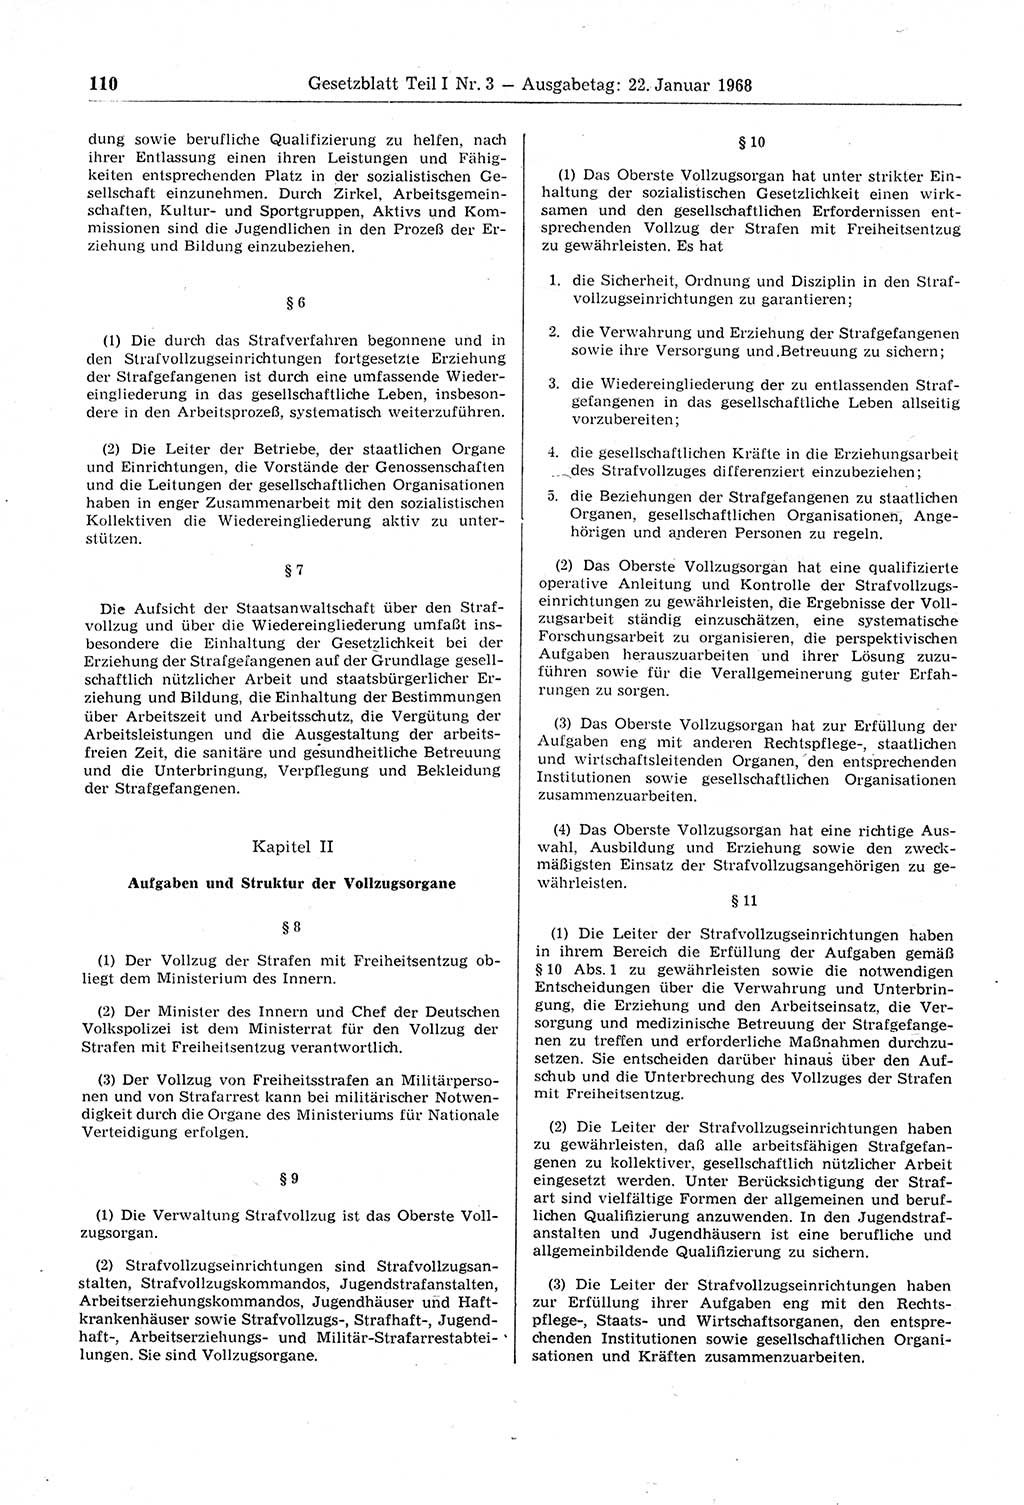 Gesetzblatt (GBl.) der Deutschen Demokratischen Republik (DDR) Teil Ⅰ 1968, Seite 110 (GBl. DDR Ⅰ 1968, S. 110)